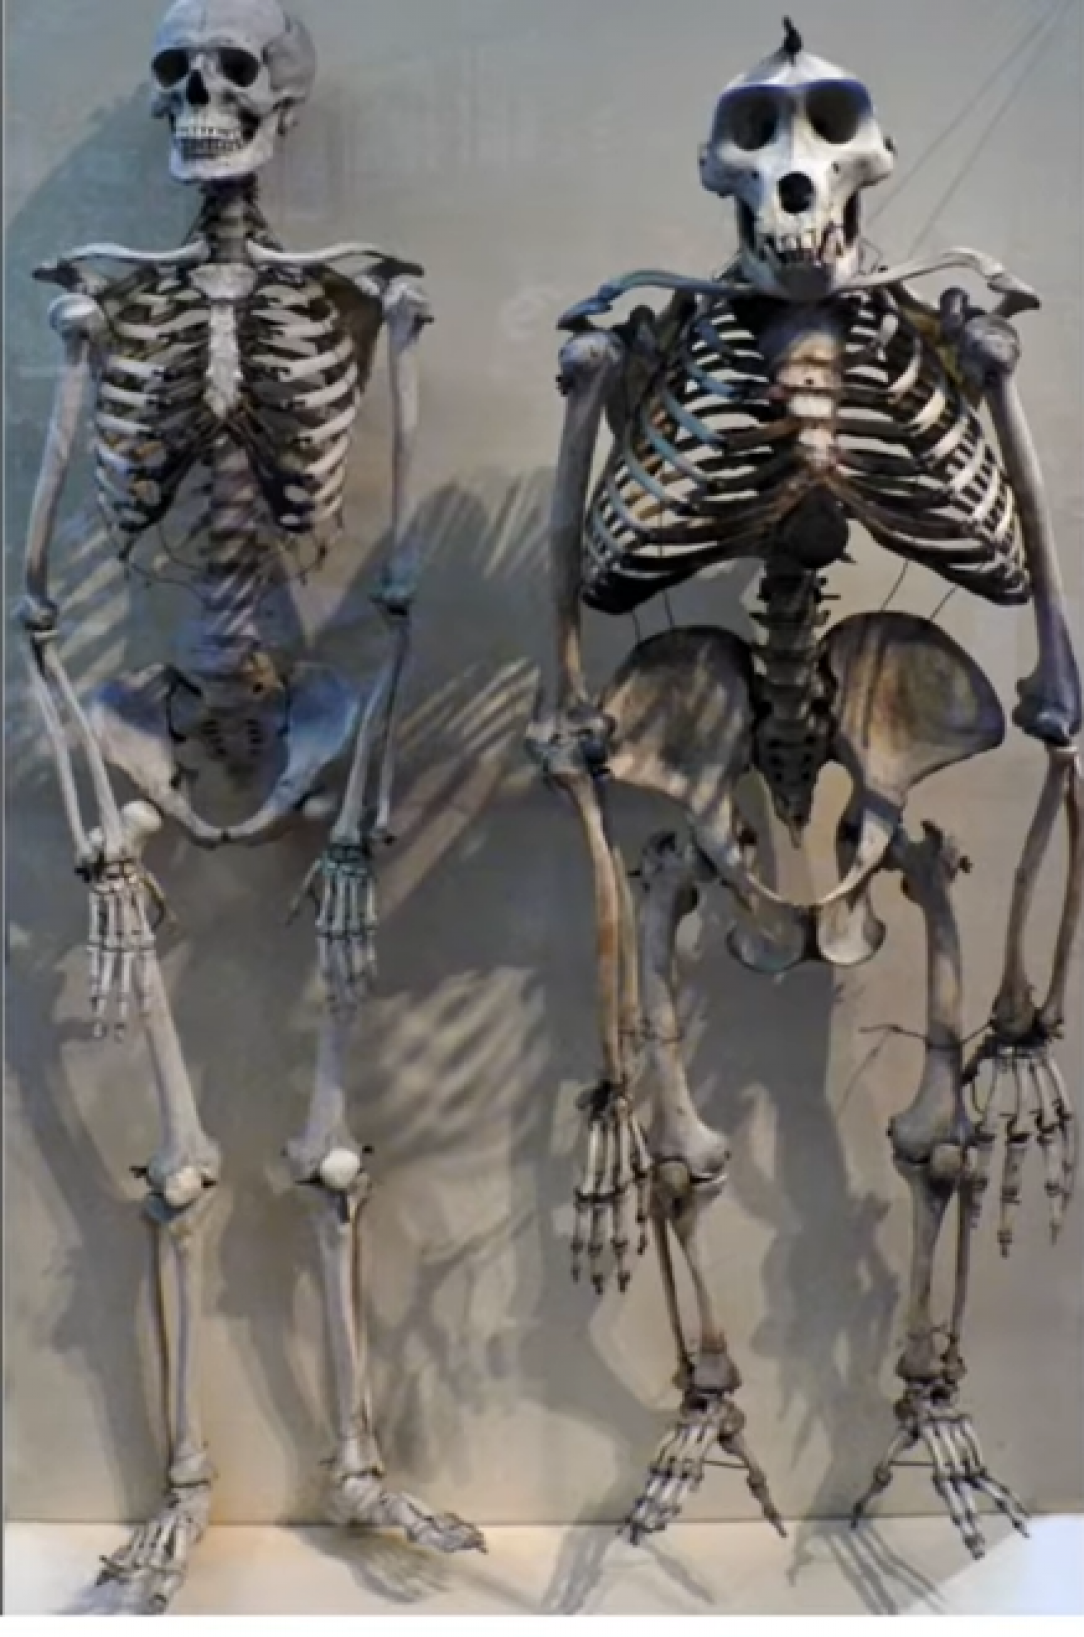 Human skeleton compared to a gorilla skeleton